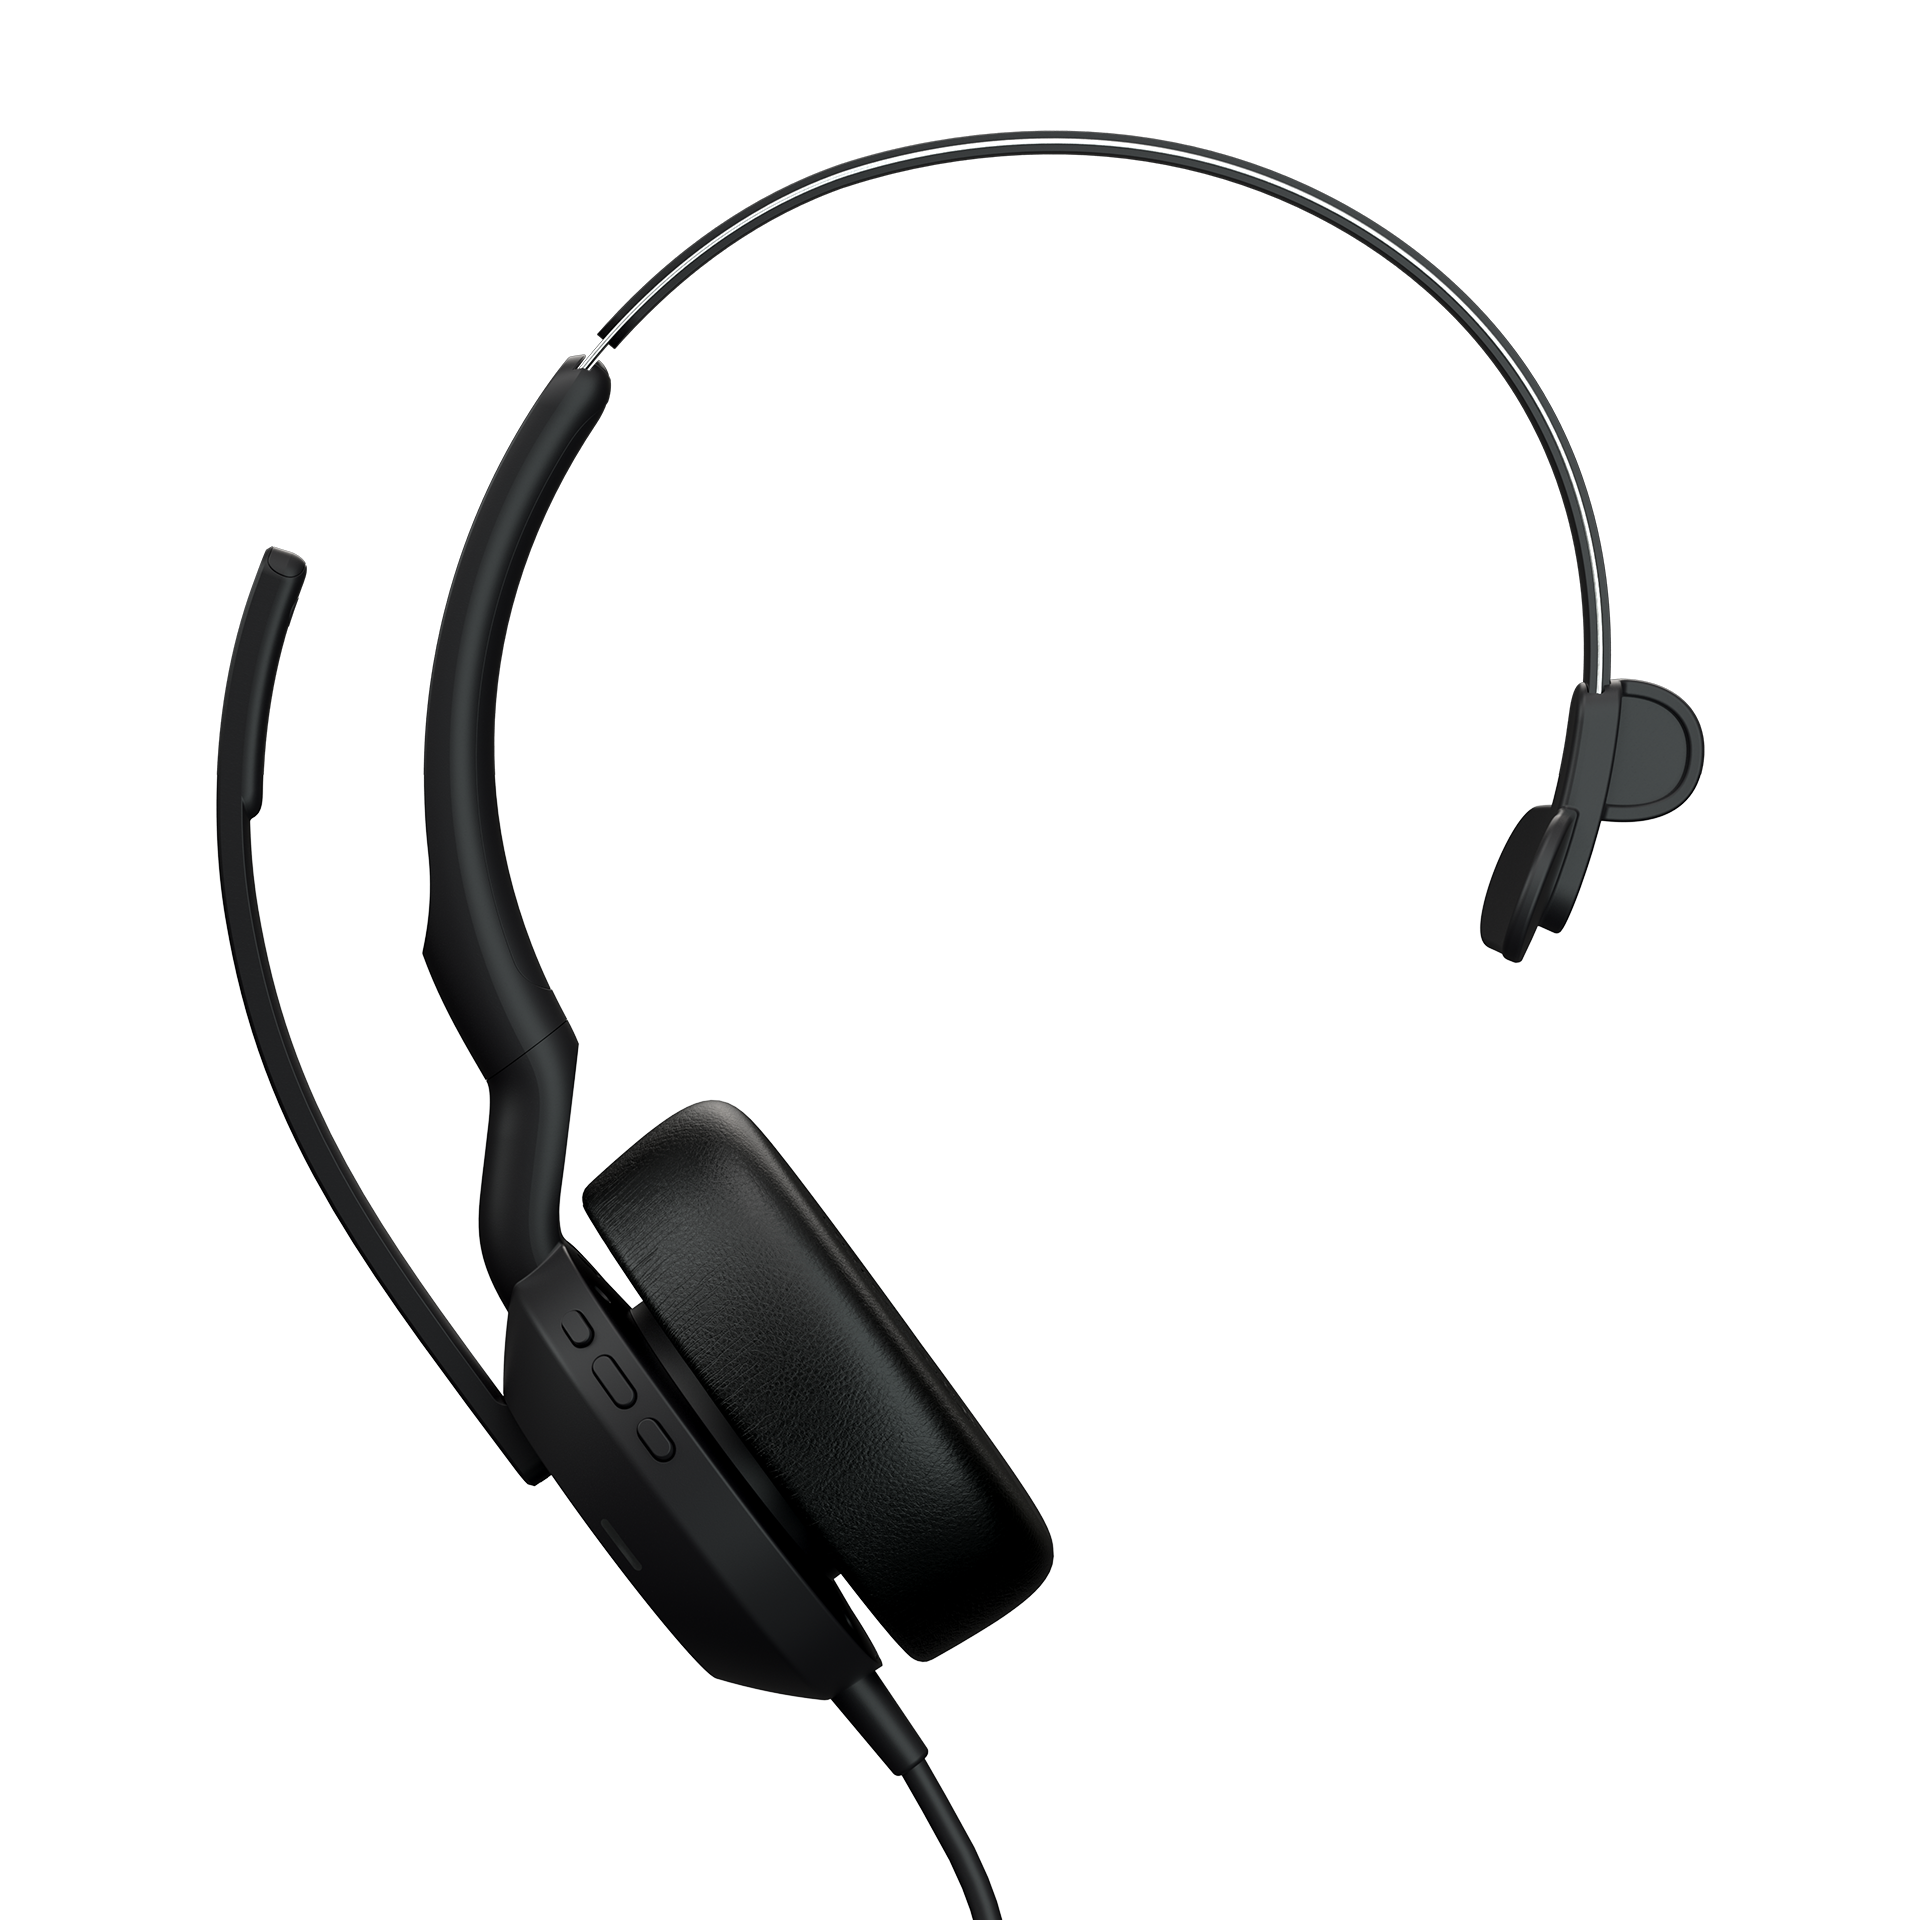 Überprüfen Sie die Kompatibilität Ihrer Kopfhörer mit Ihrem Gerät
Aktualisieren Sie die Bluetooth-Version Ihres Geräts, falls möglich